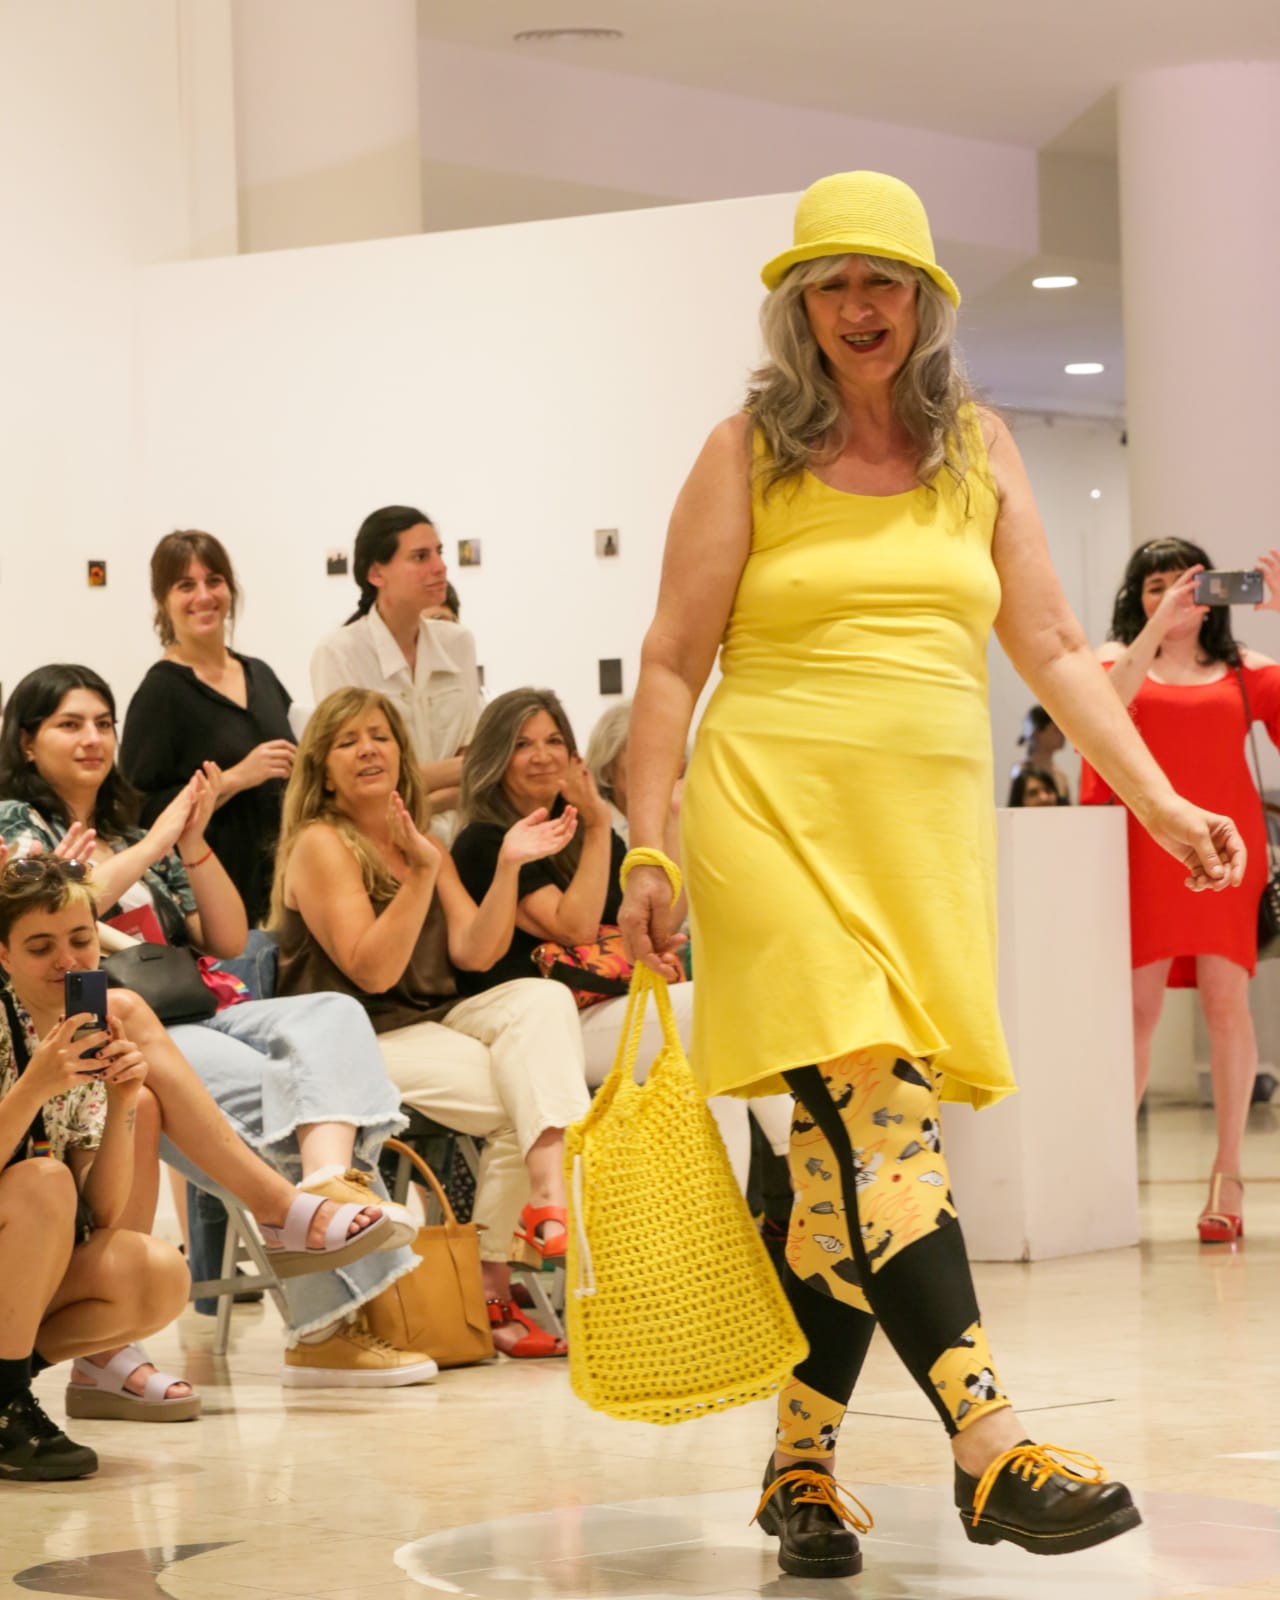 "El desfile fue un regalo inesperado", dijo una de las modelos, Gaby Schulz, con un vestido amarillo que acompañaba sus formas